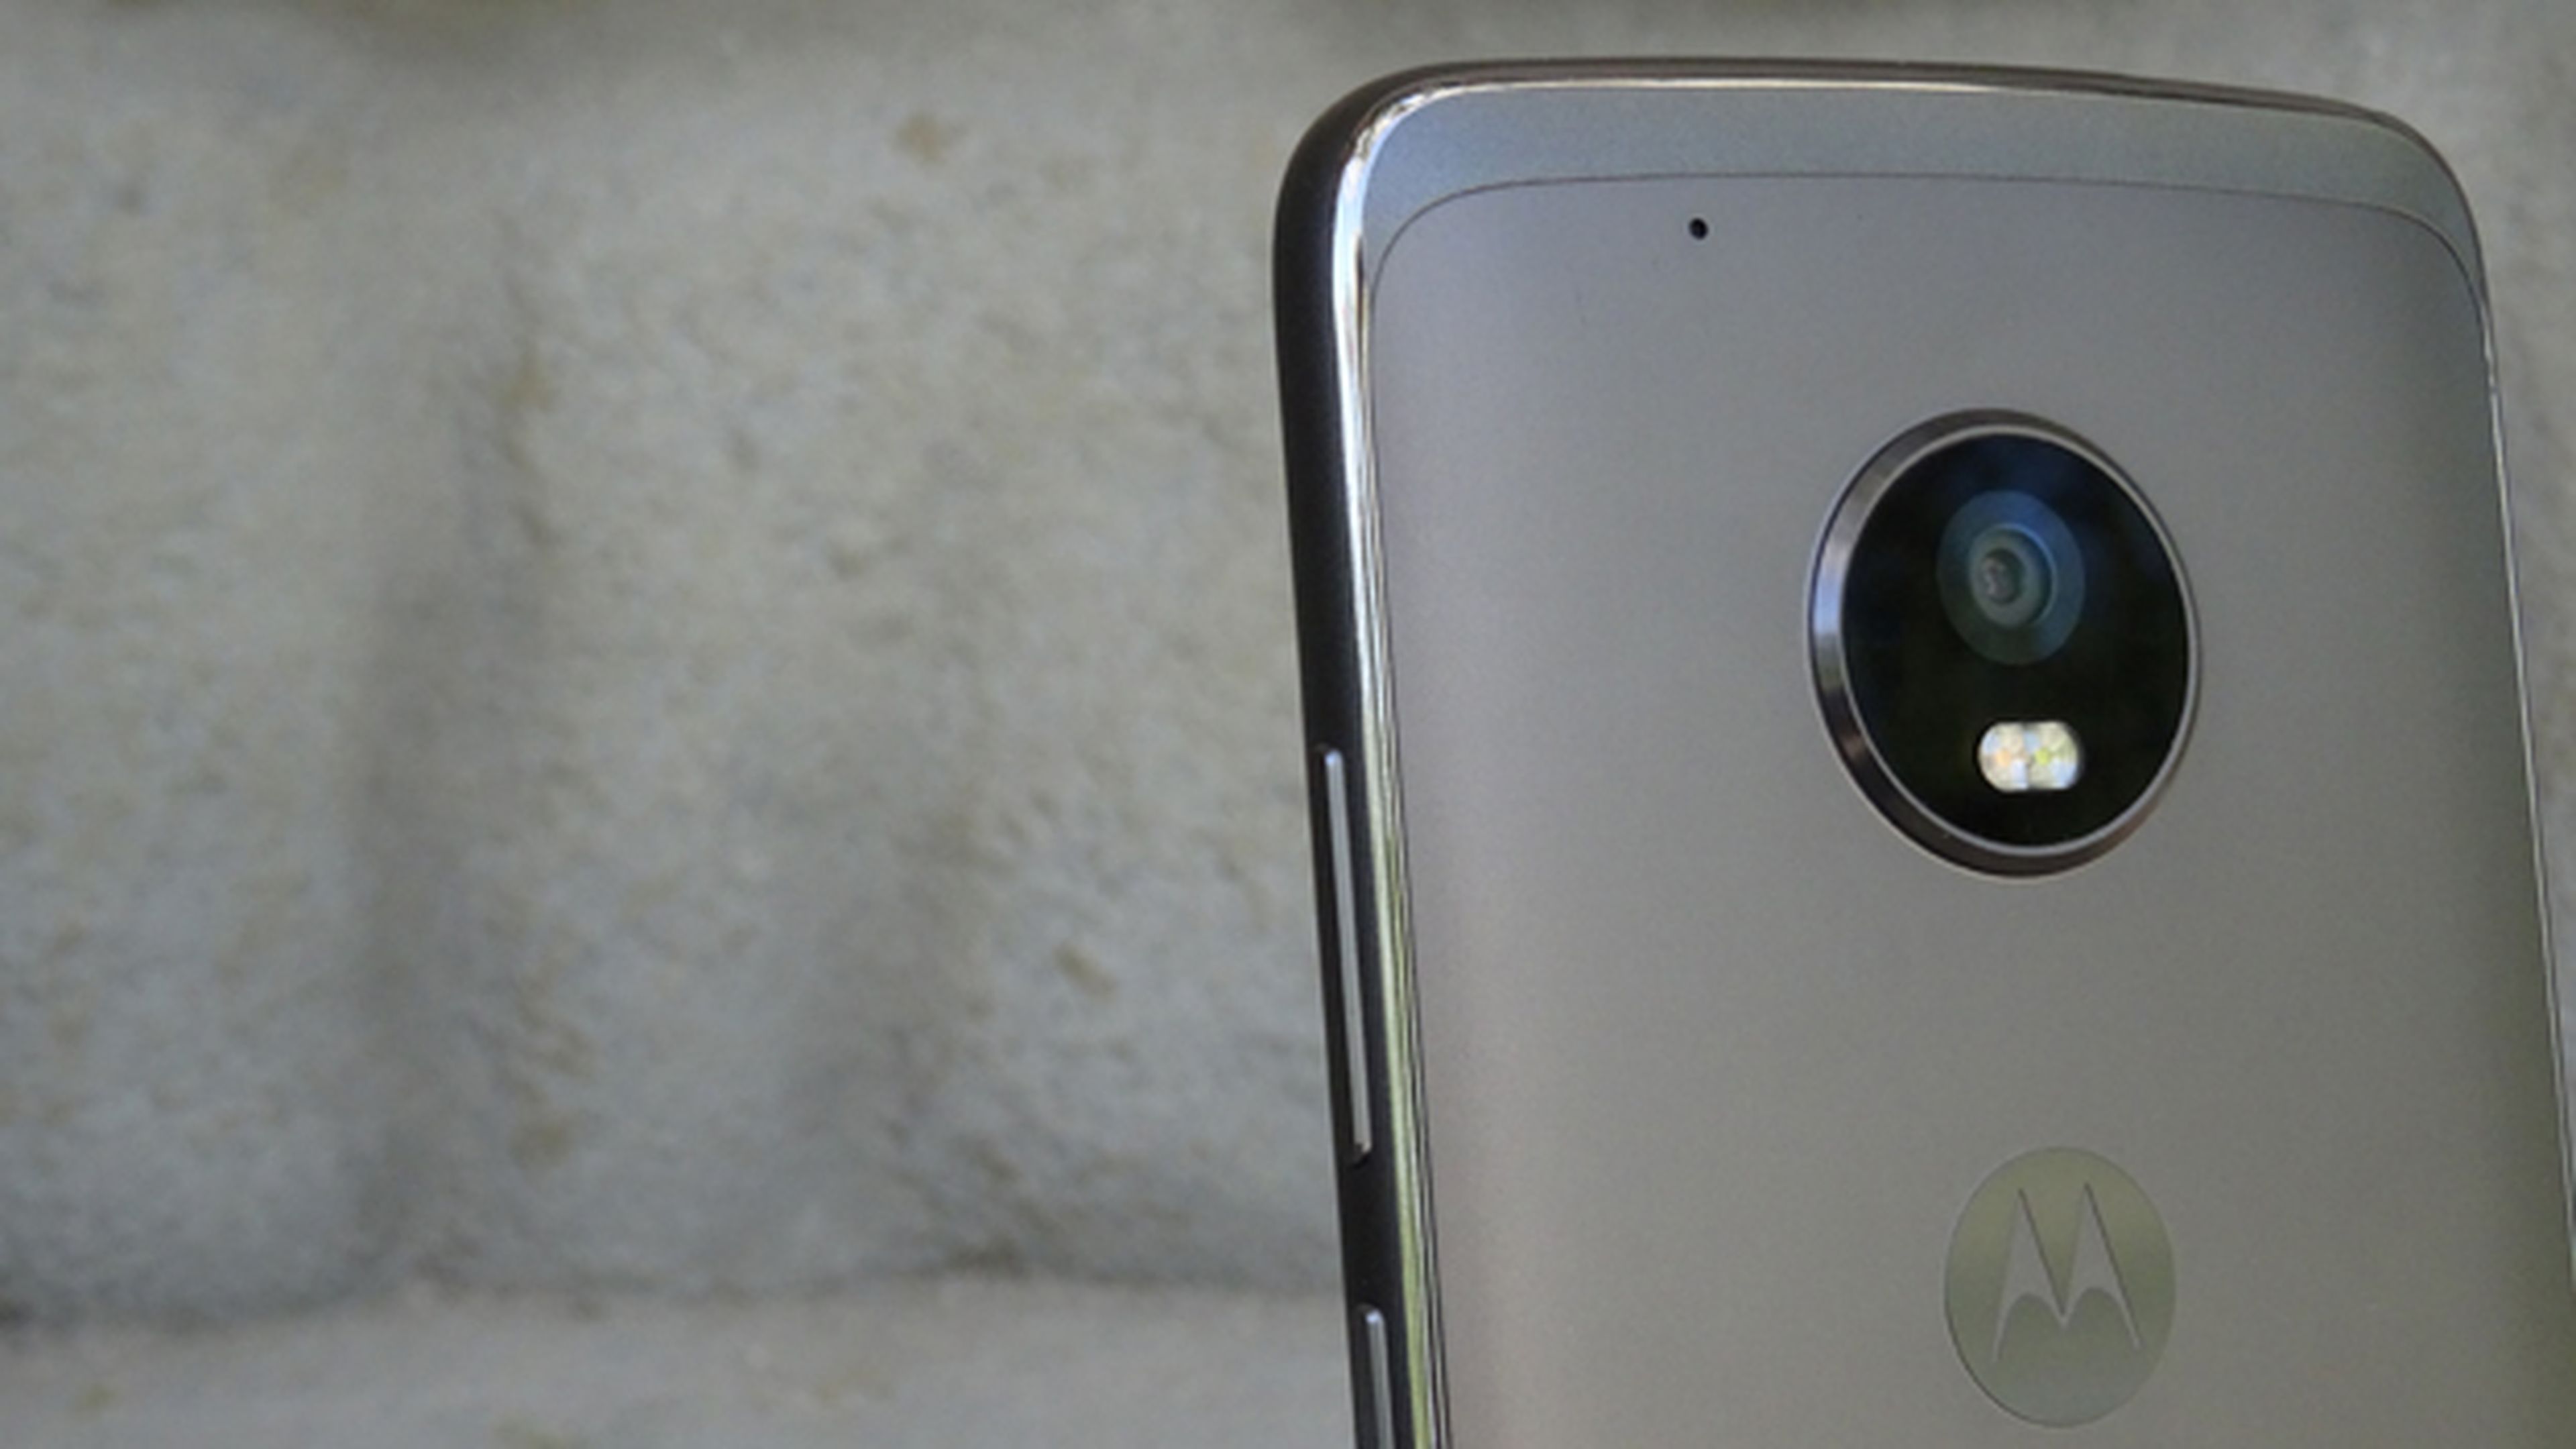 La cámara del Moto G5 Plus sobresale significativamente por encima de la carcasa